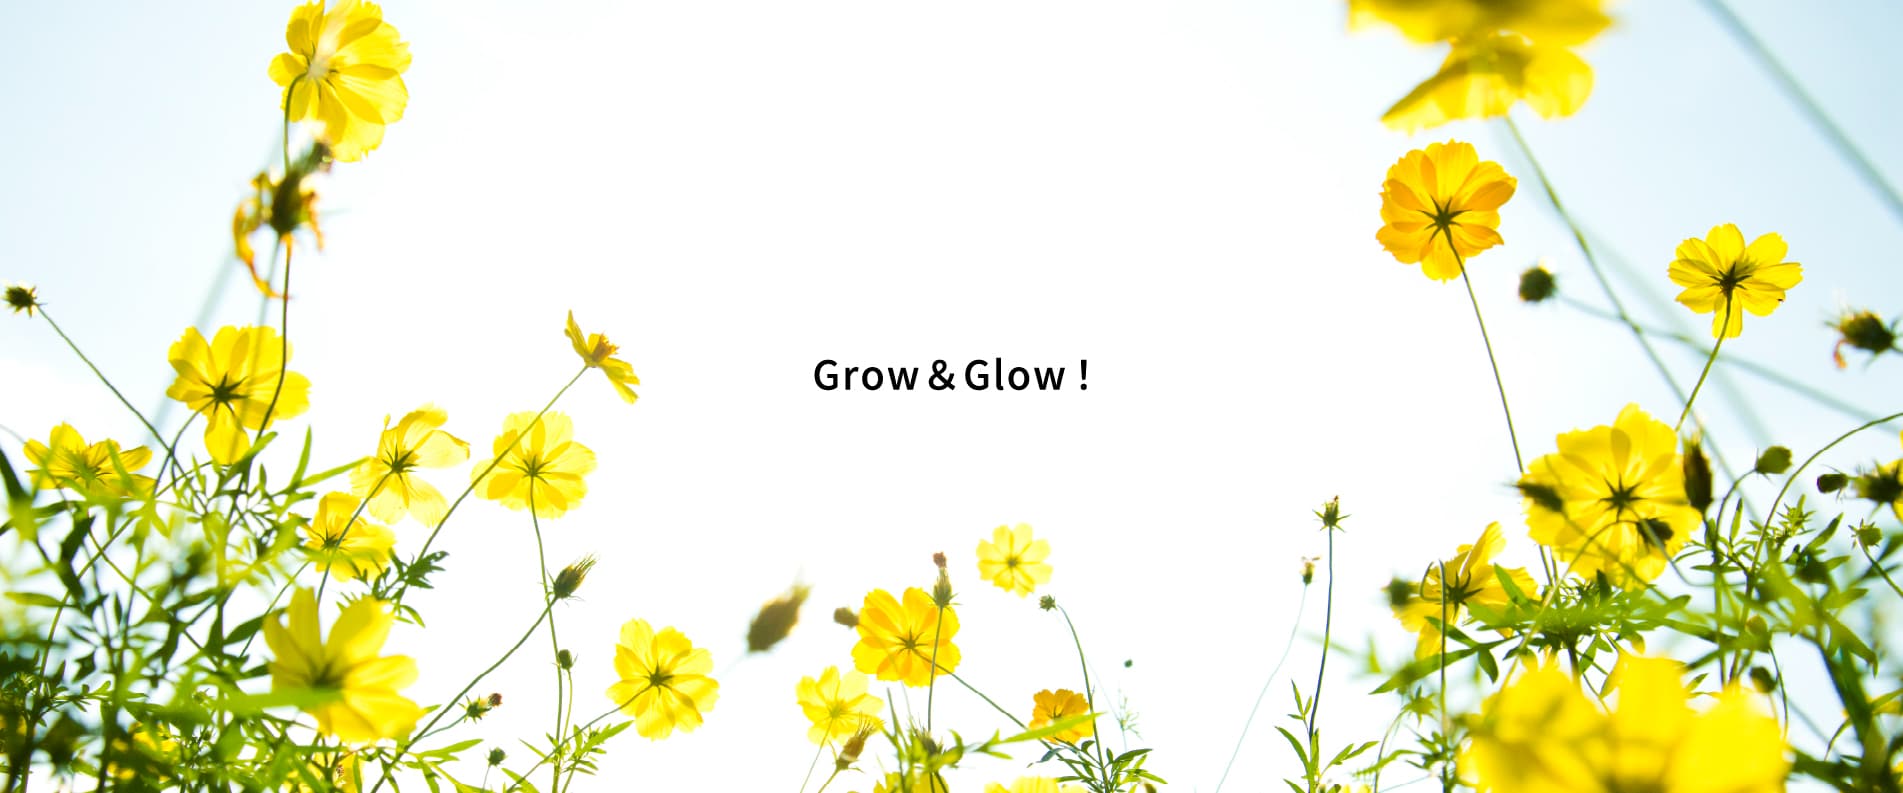 Grow & Glow!